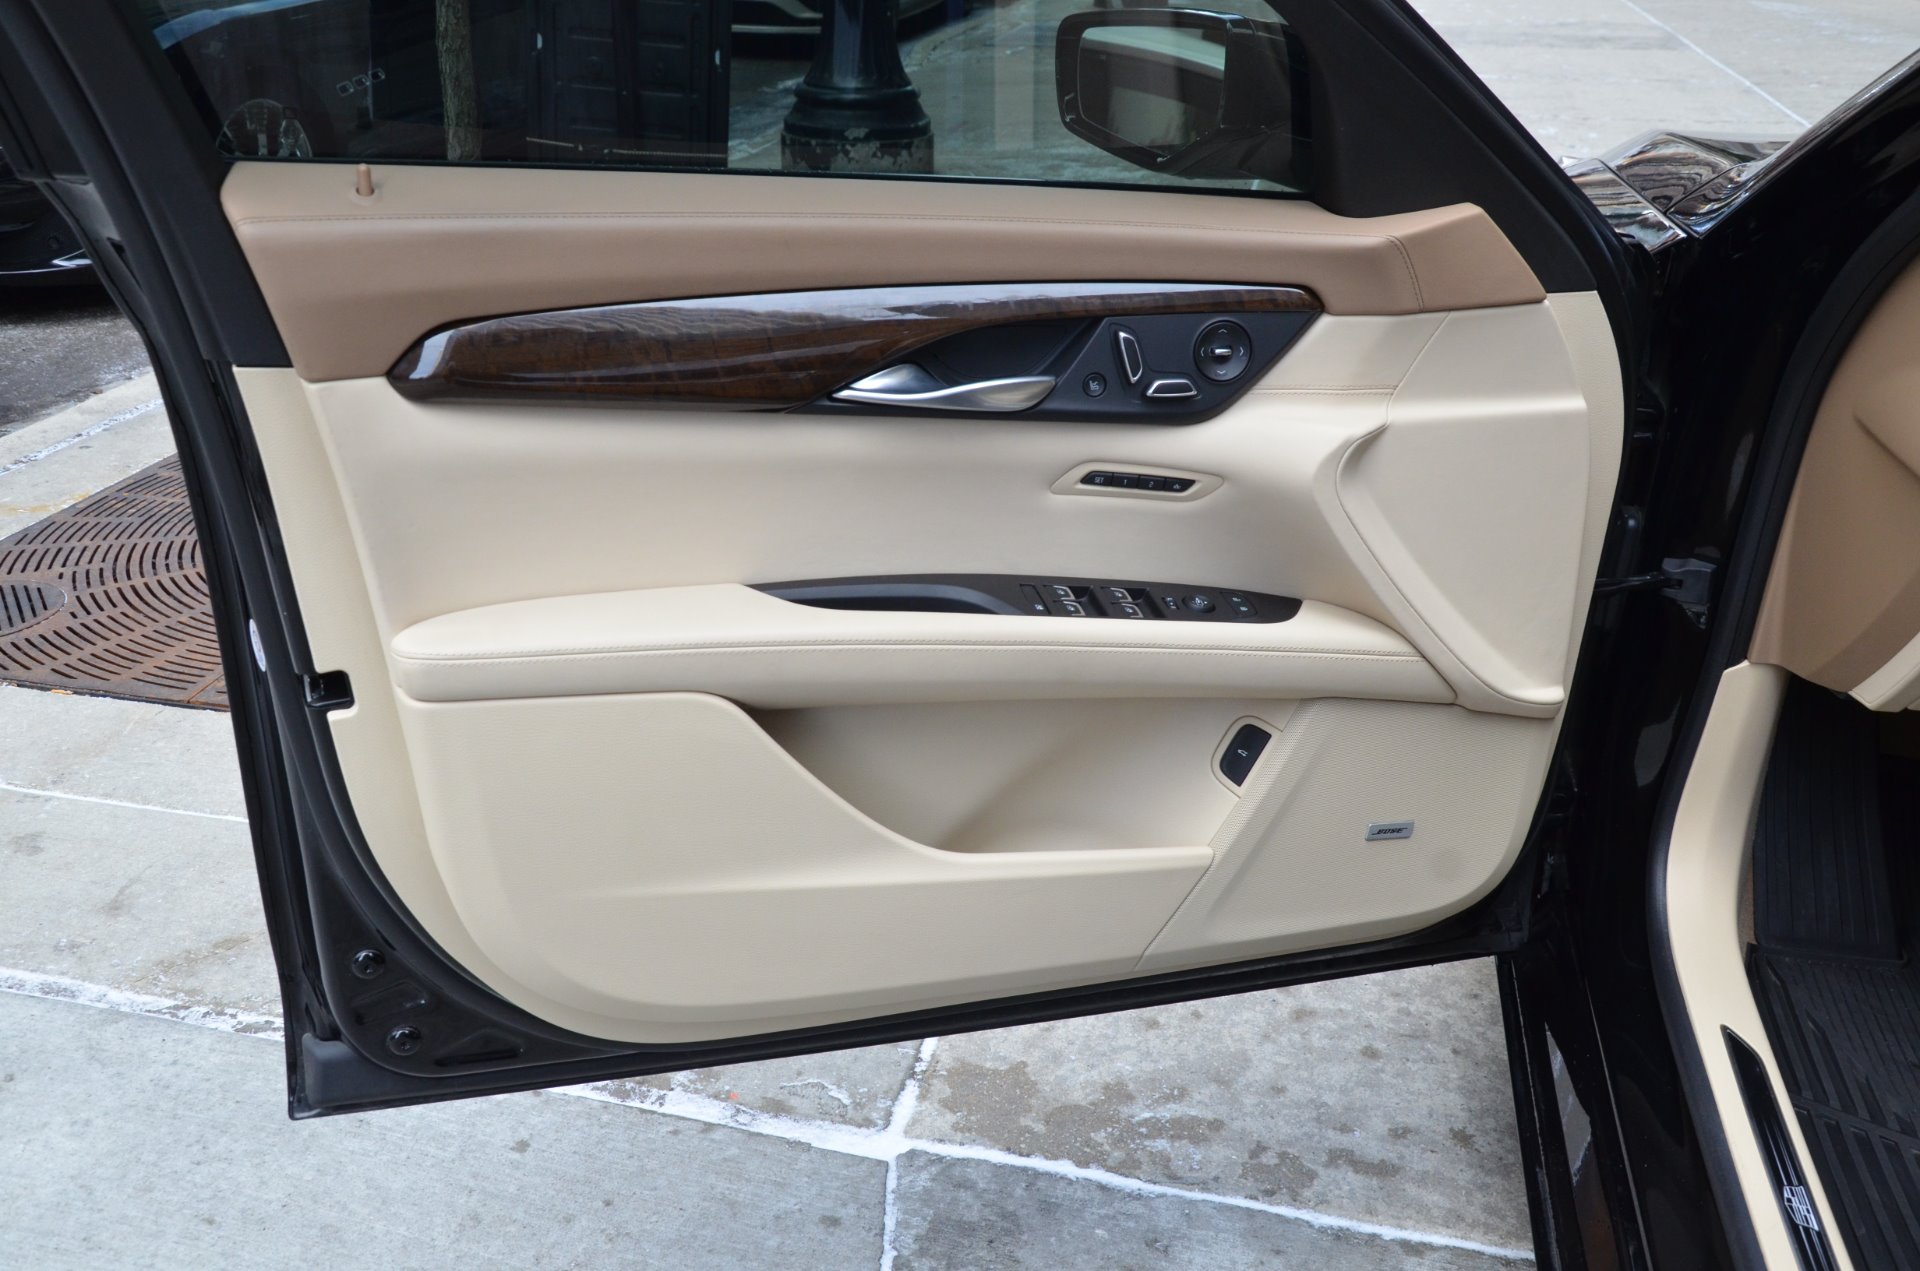 Used 2016 Cadillac CT6 3.0TT Platinum | Chicago, IL